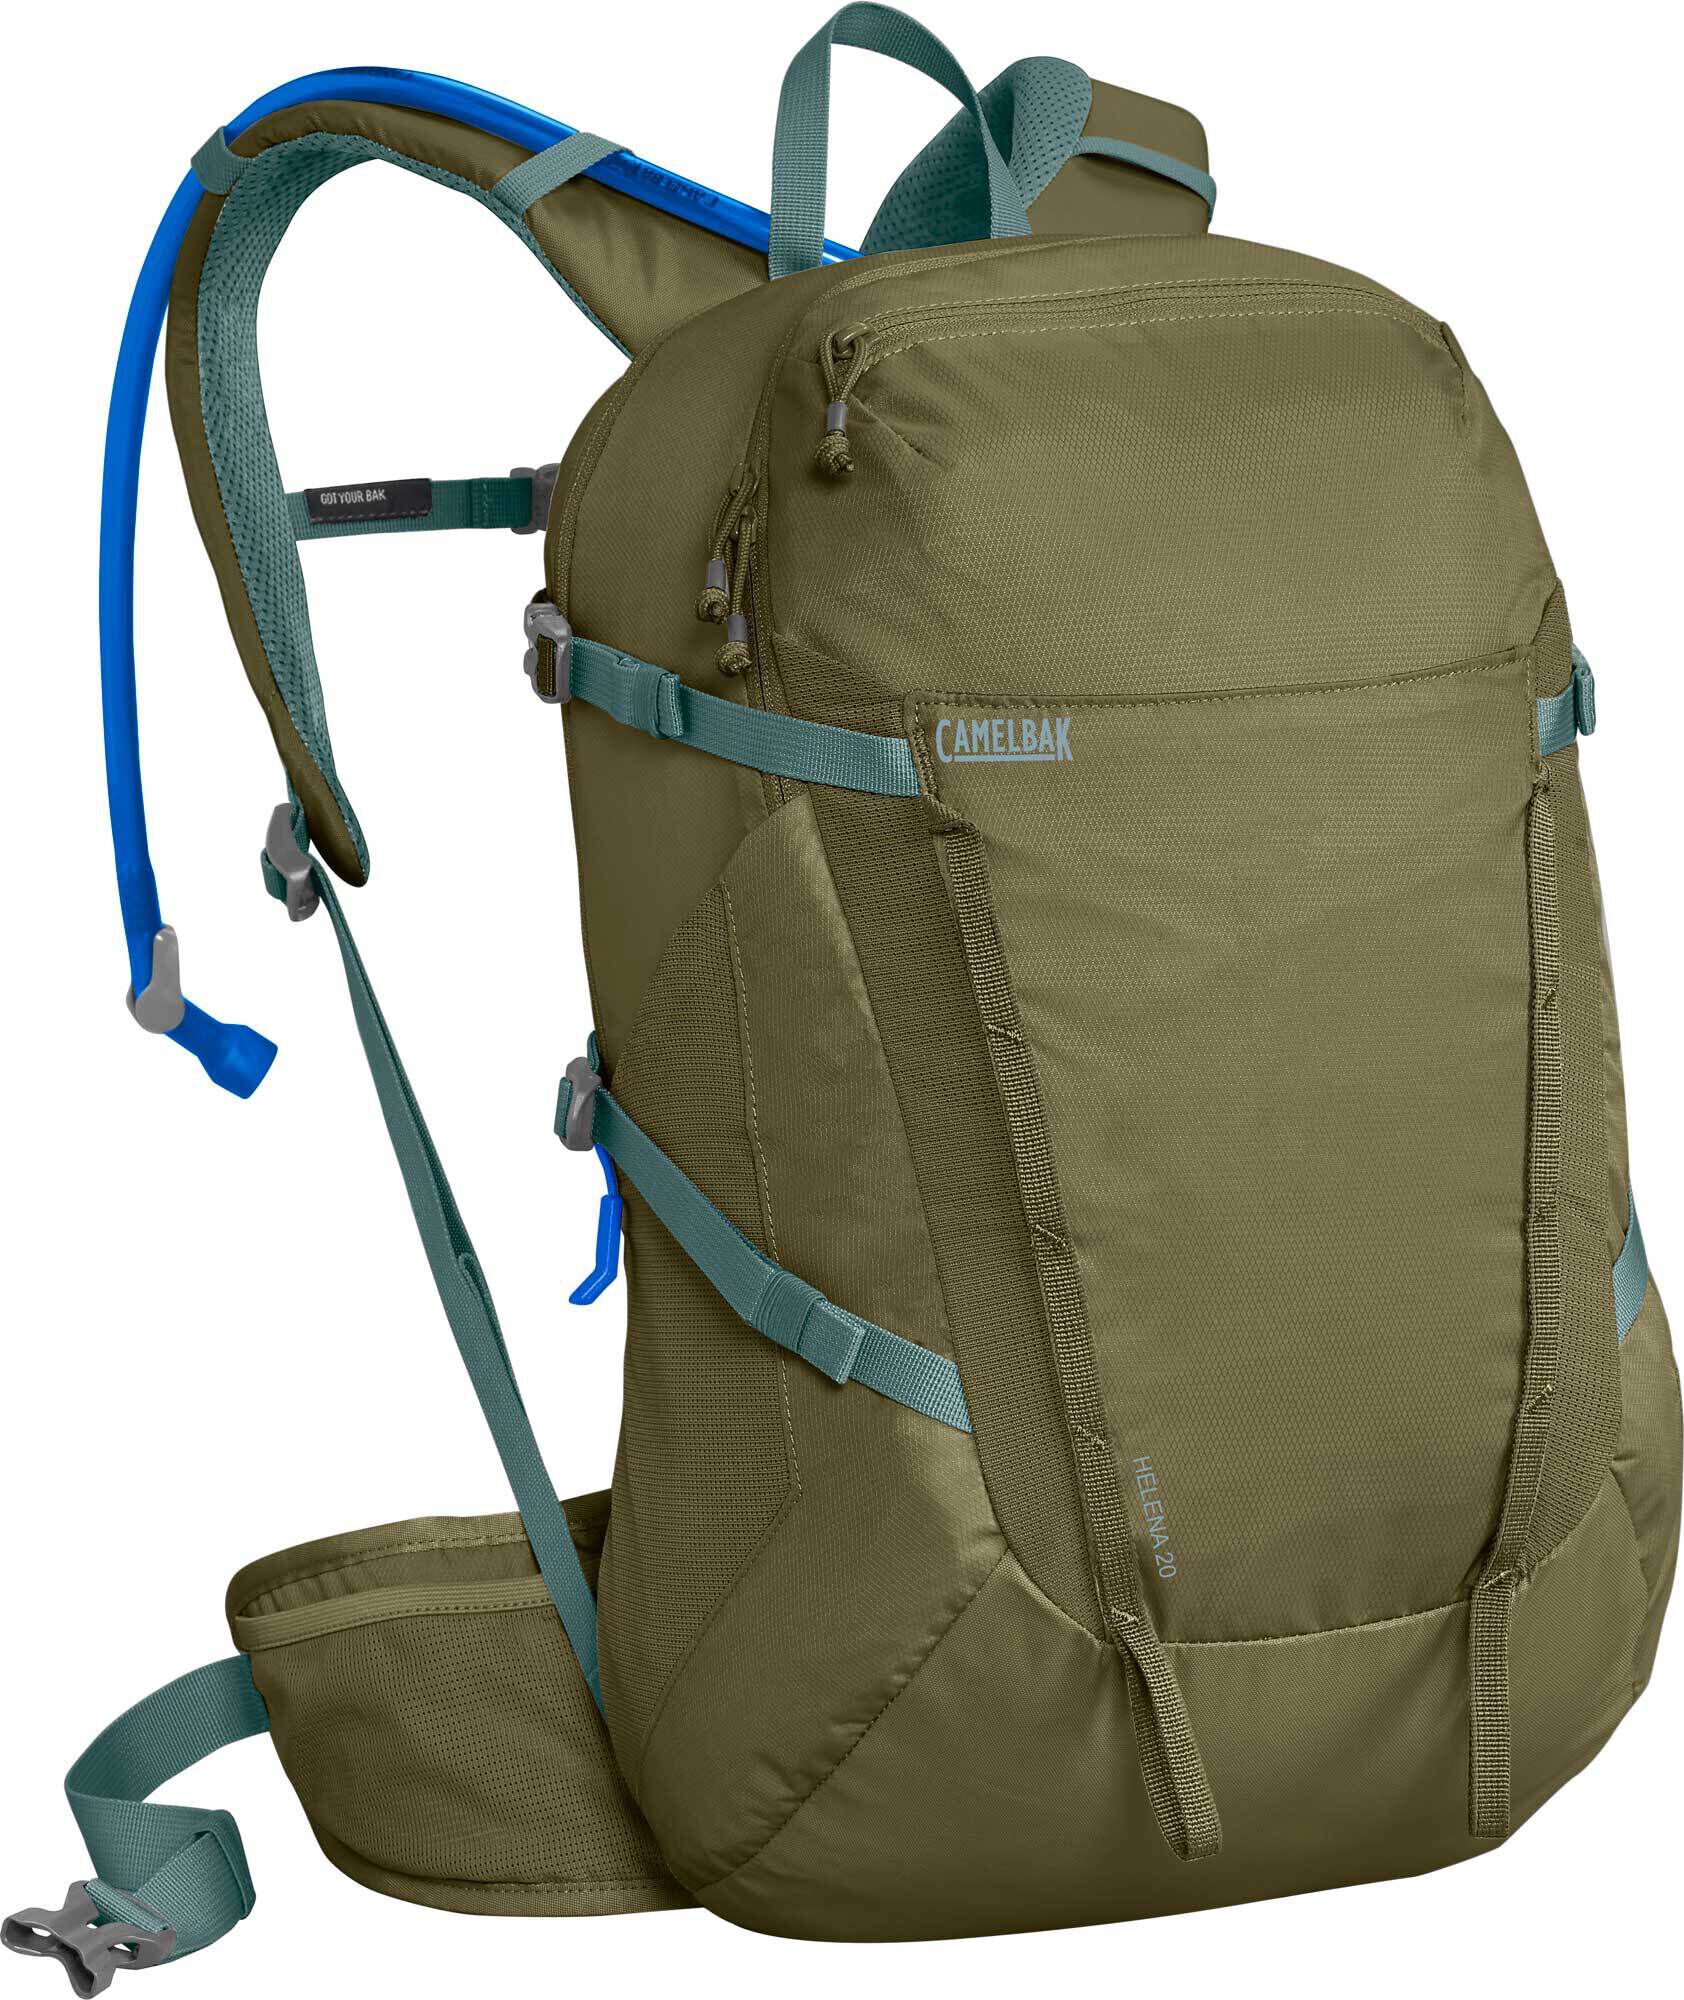 Buy Hiking Packs, Hydration Packs For Hiking & More | CamelBak